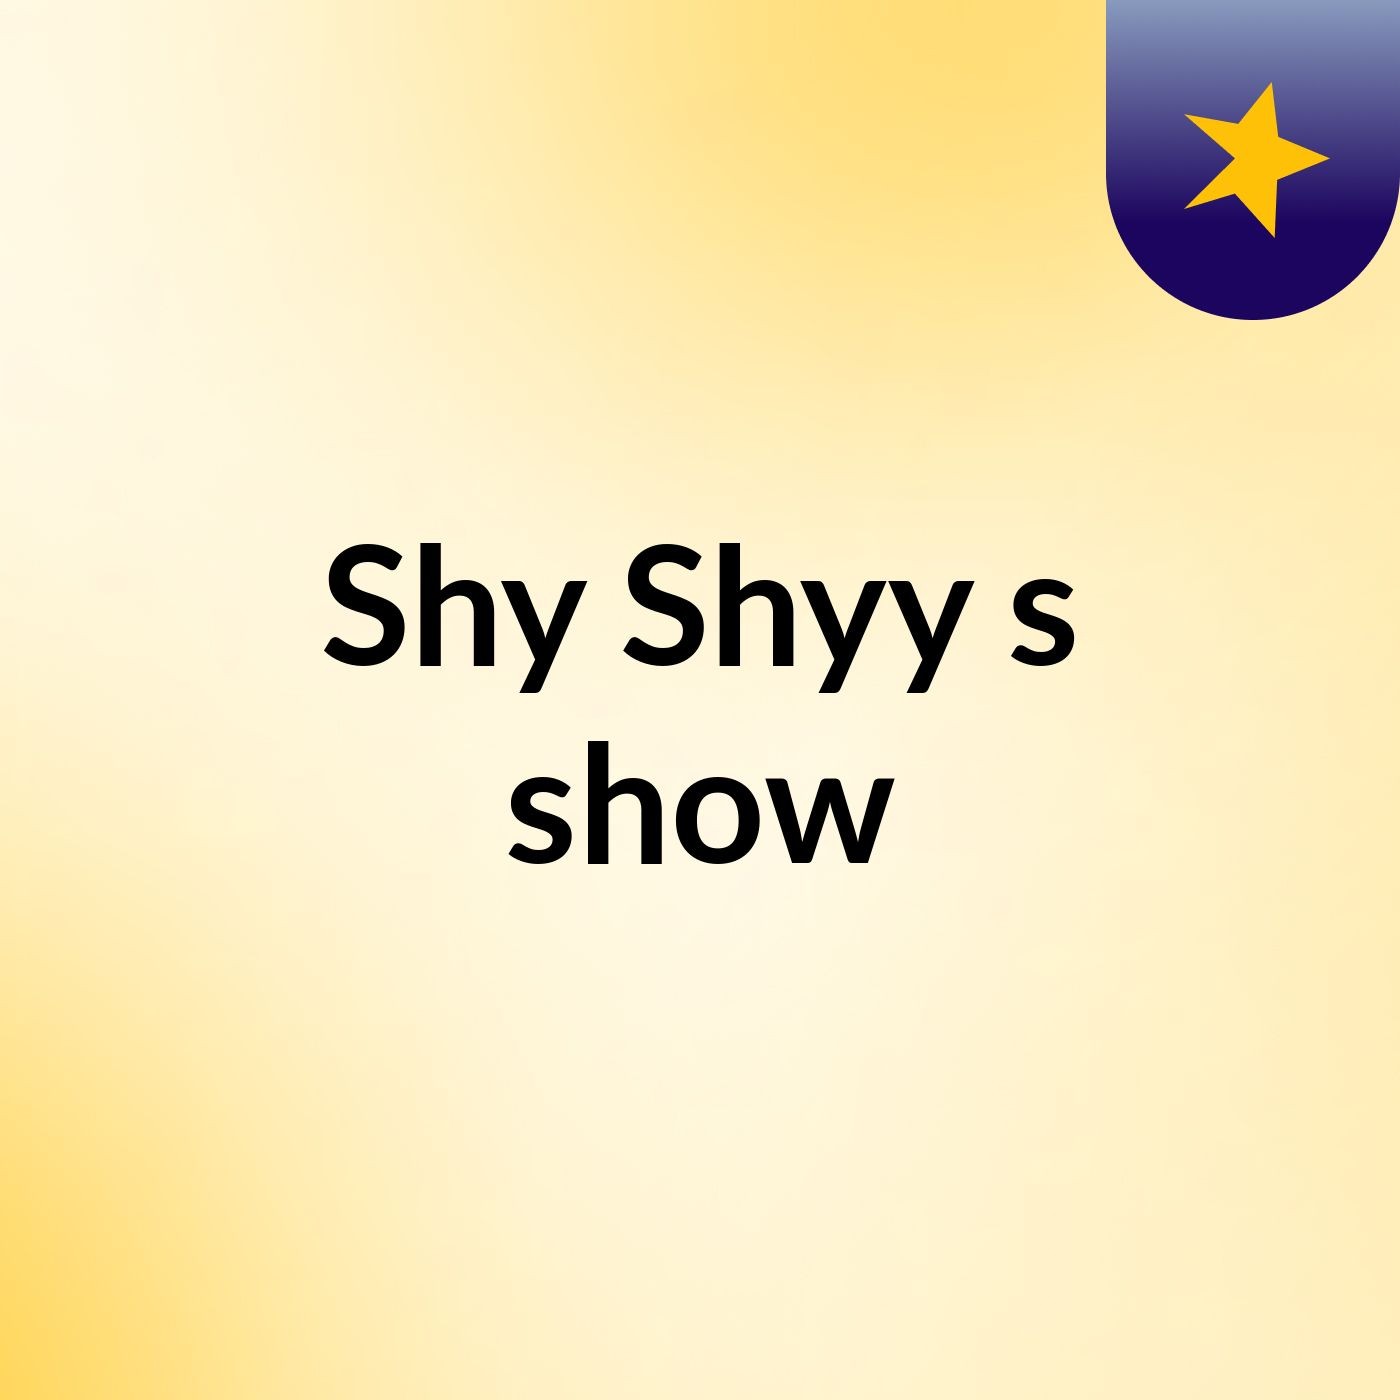 Shy Shyy's show